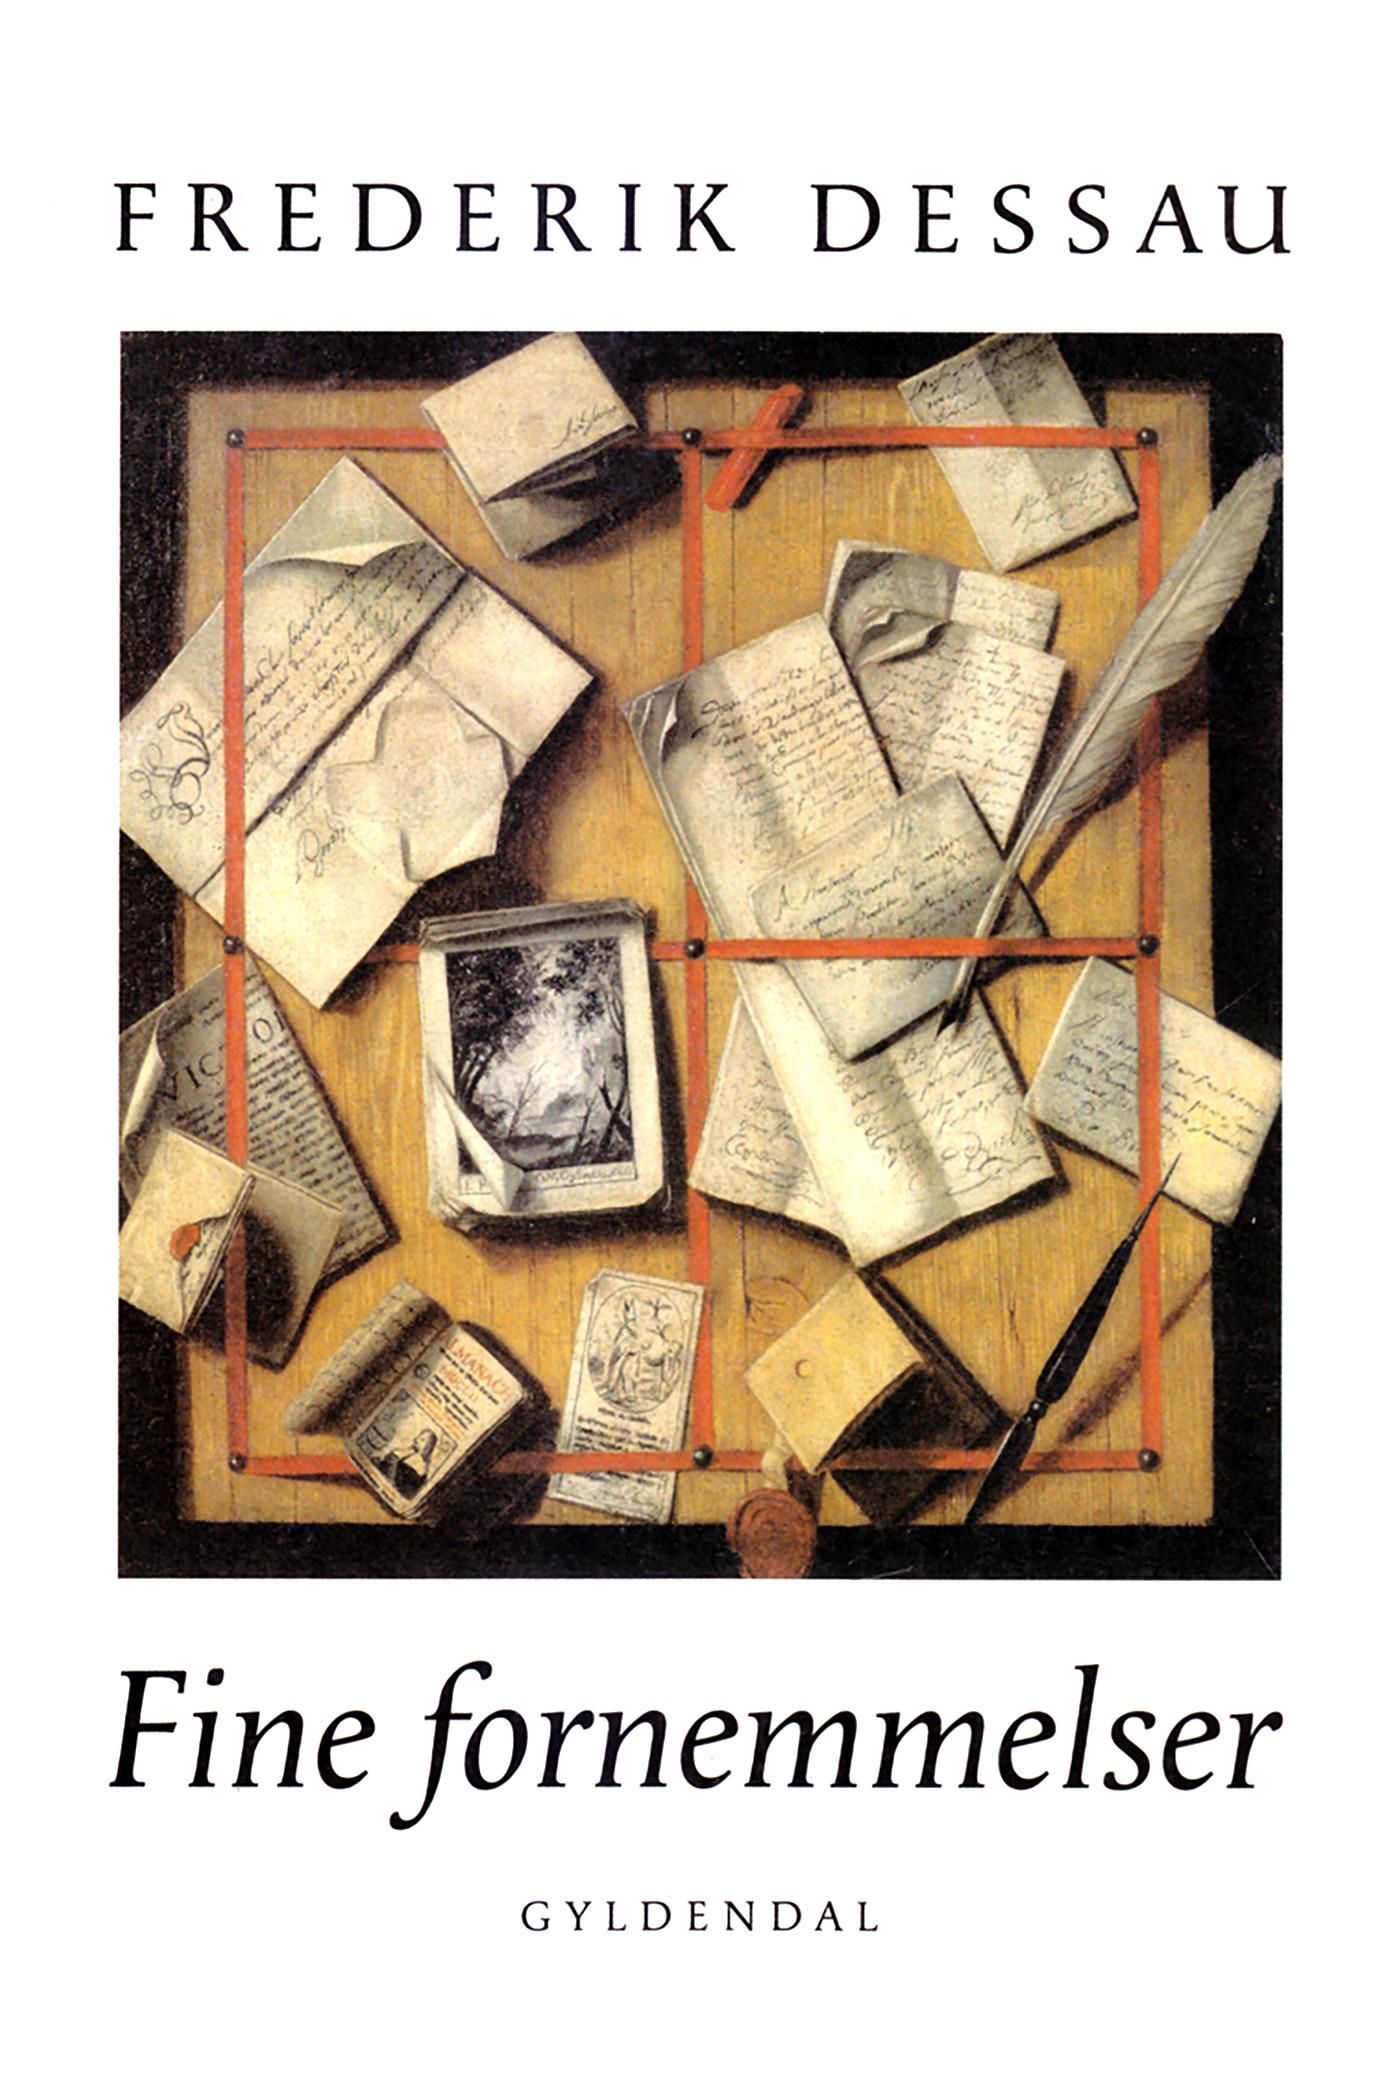 Fine fornemmelser, e-bok av Frederik Dessau